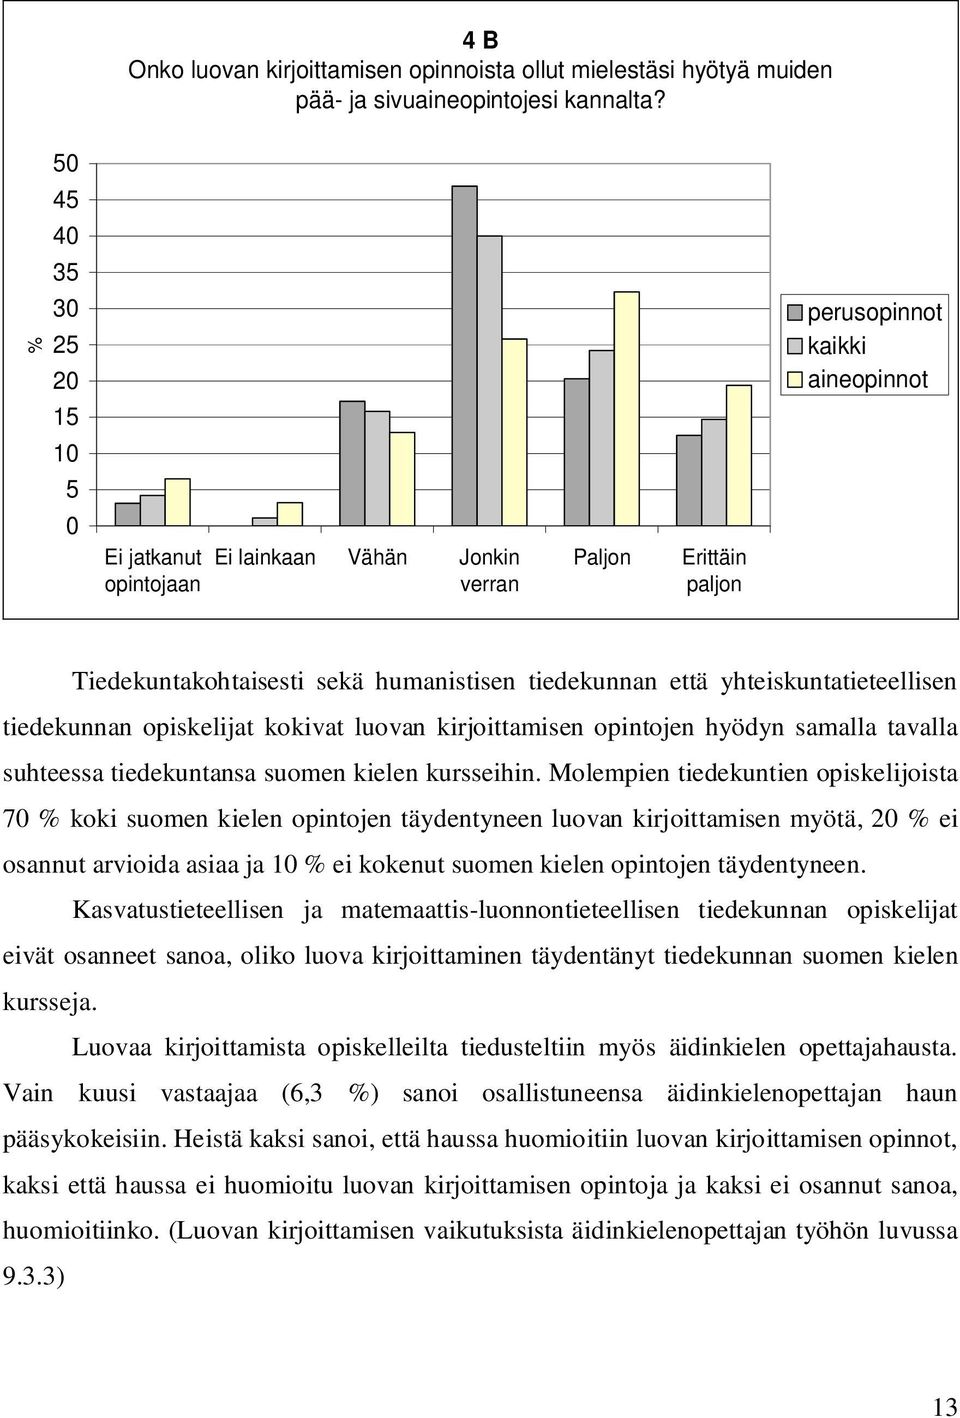 yhteiskuntatieteellisen tiedekunnan opiskelijat kokivat luovan kirjoittamisen opintojen hyödyn samalla tavalla suhteessa tiedekuntansa suomen kielen kursseihin.